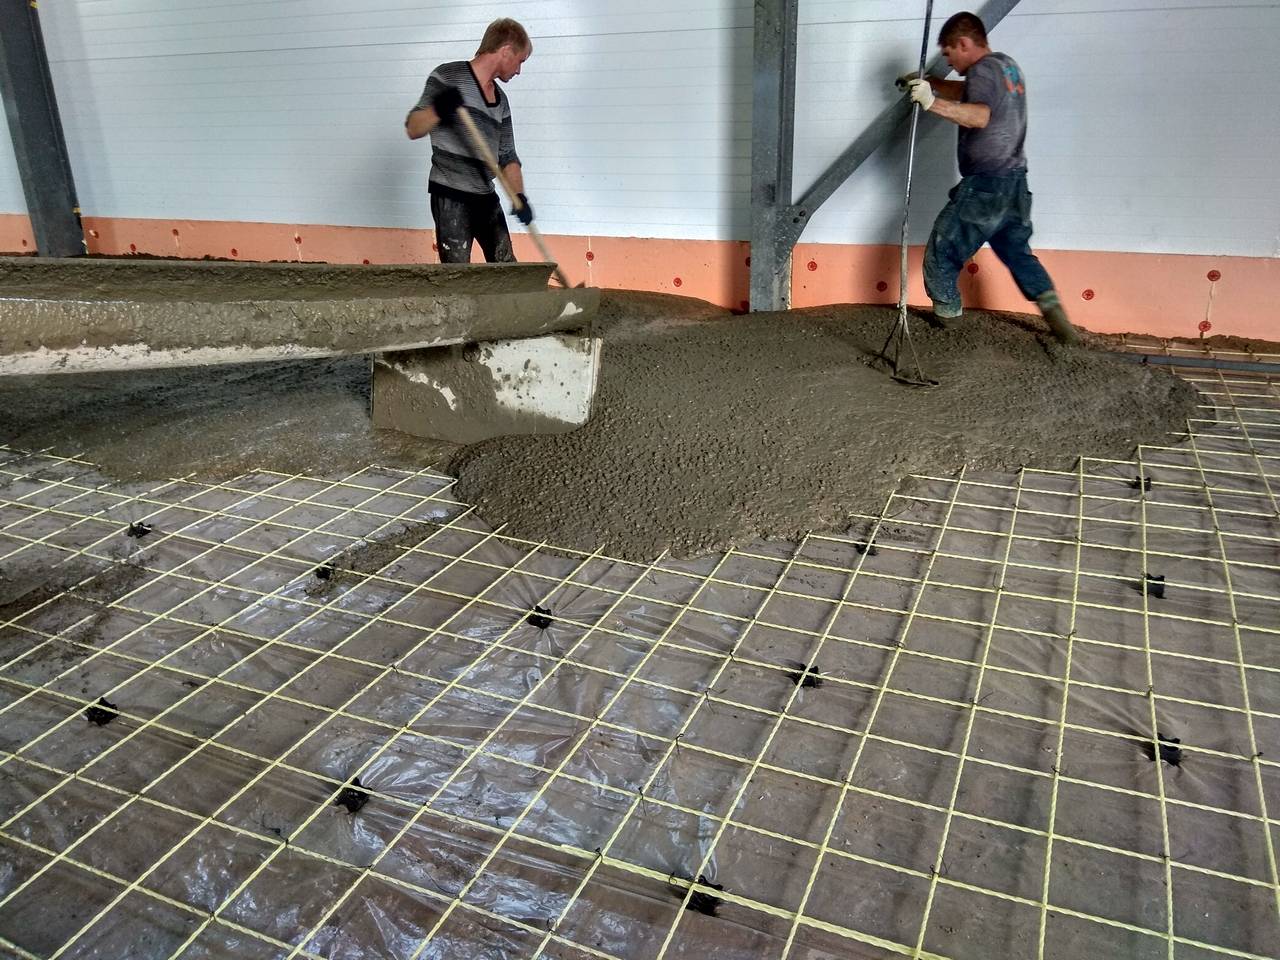 Как правильно залить бетоном пол в гараже своими руками, пошаговое руководство и пропорции